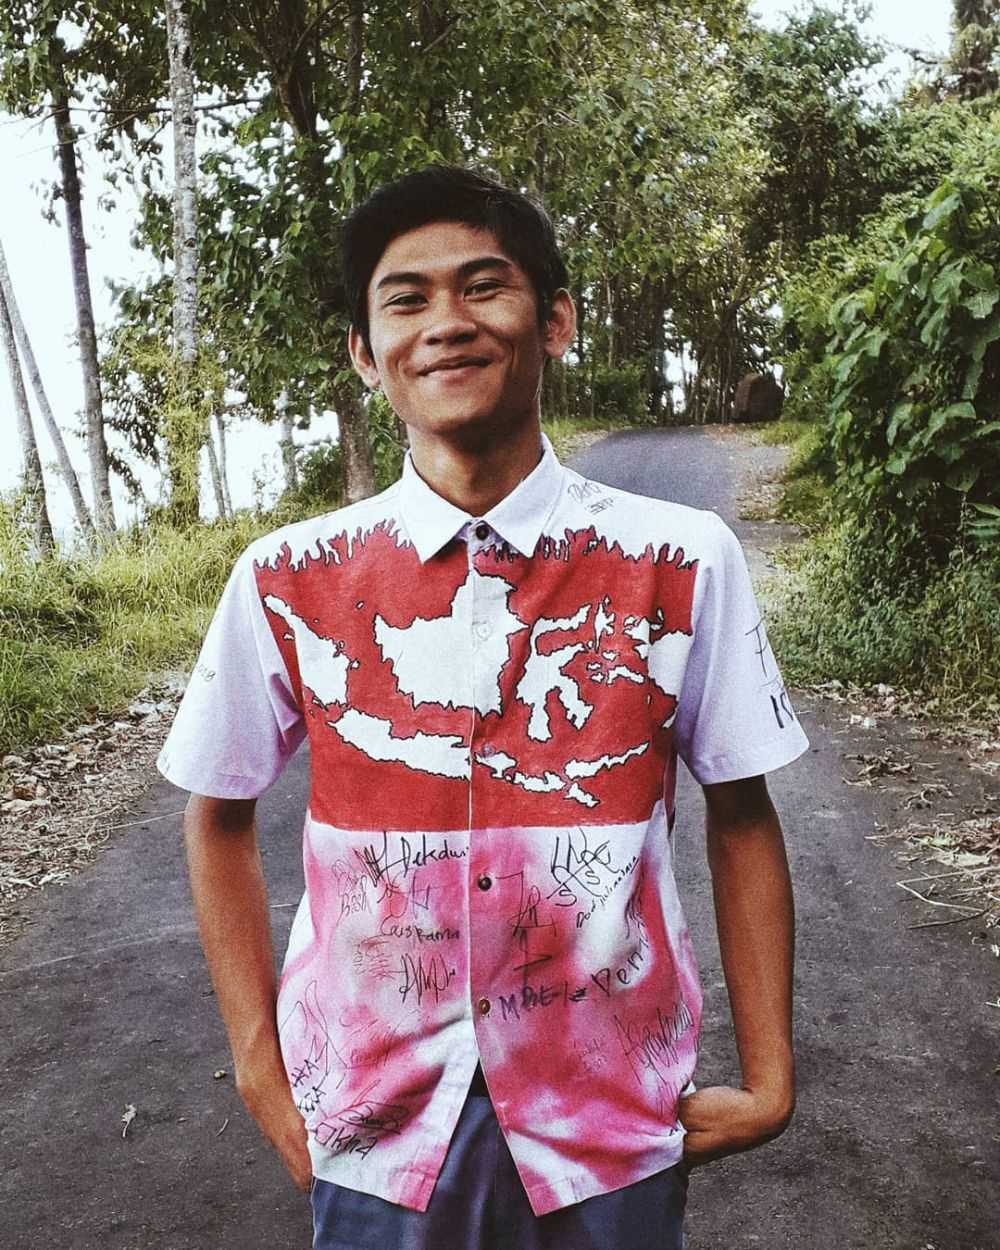 Ini pengakuan Epen, pelajar yang cat seragam SMA ala jaket Jokowi